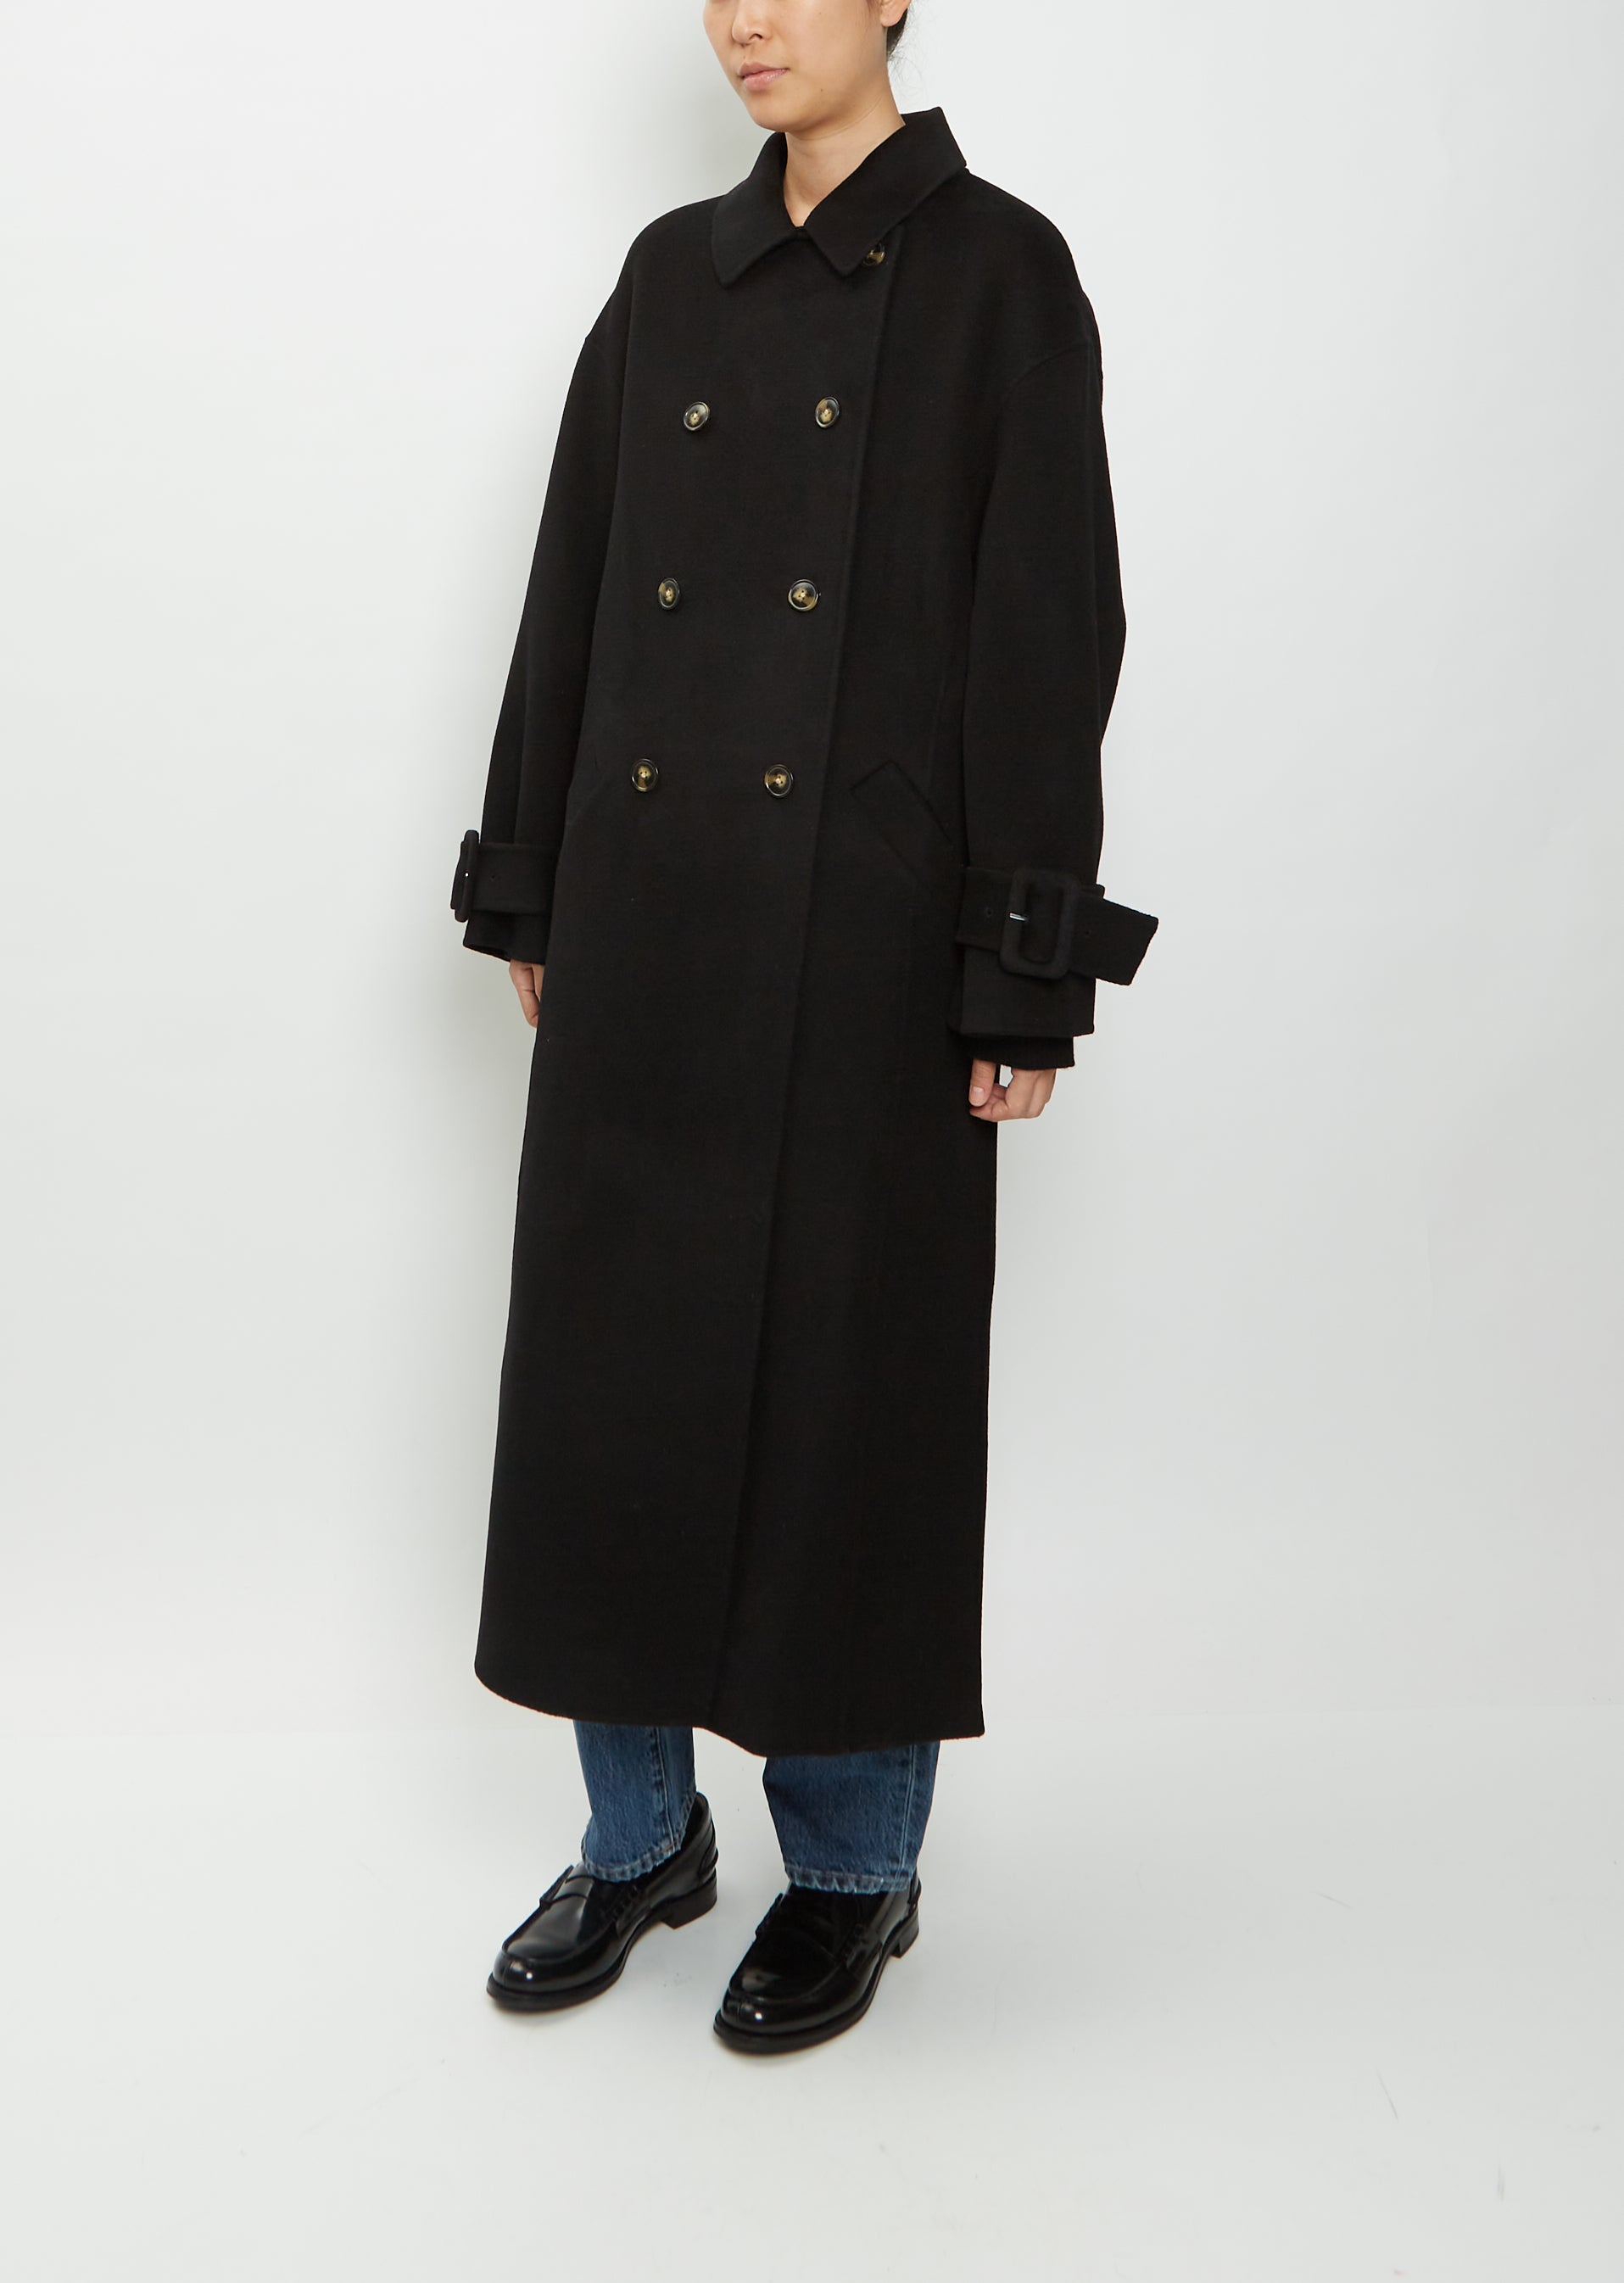 Wool coat Louis Feraud Black size 38 FR in Wool - 12564229